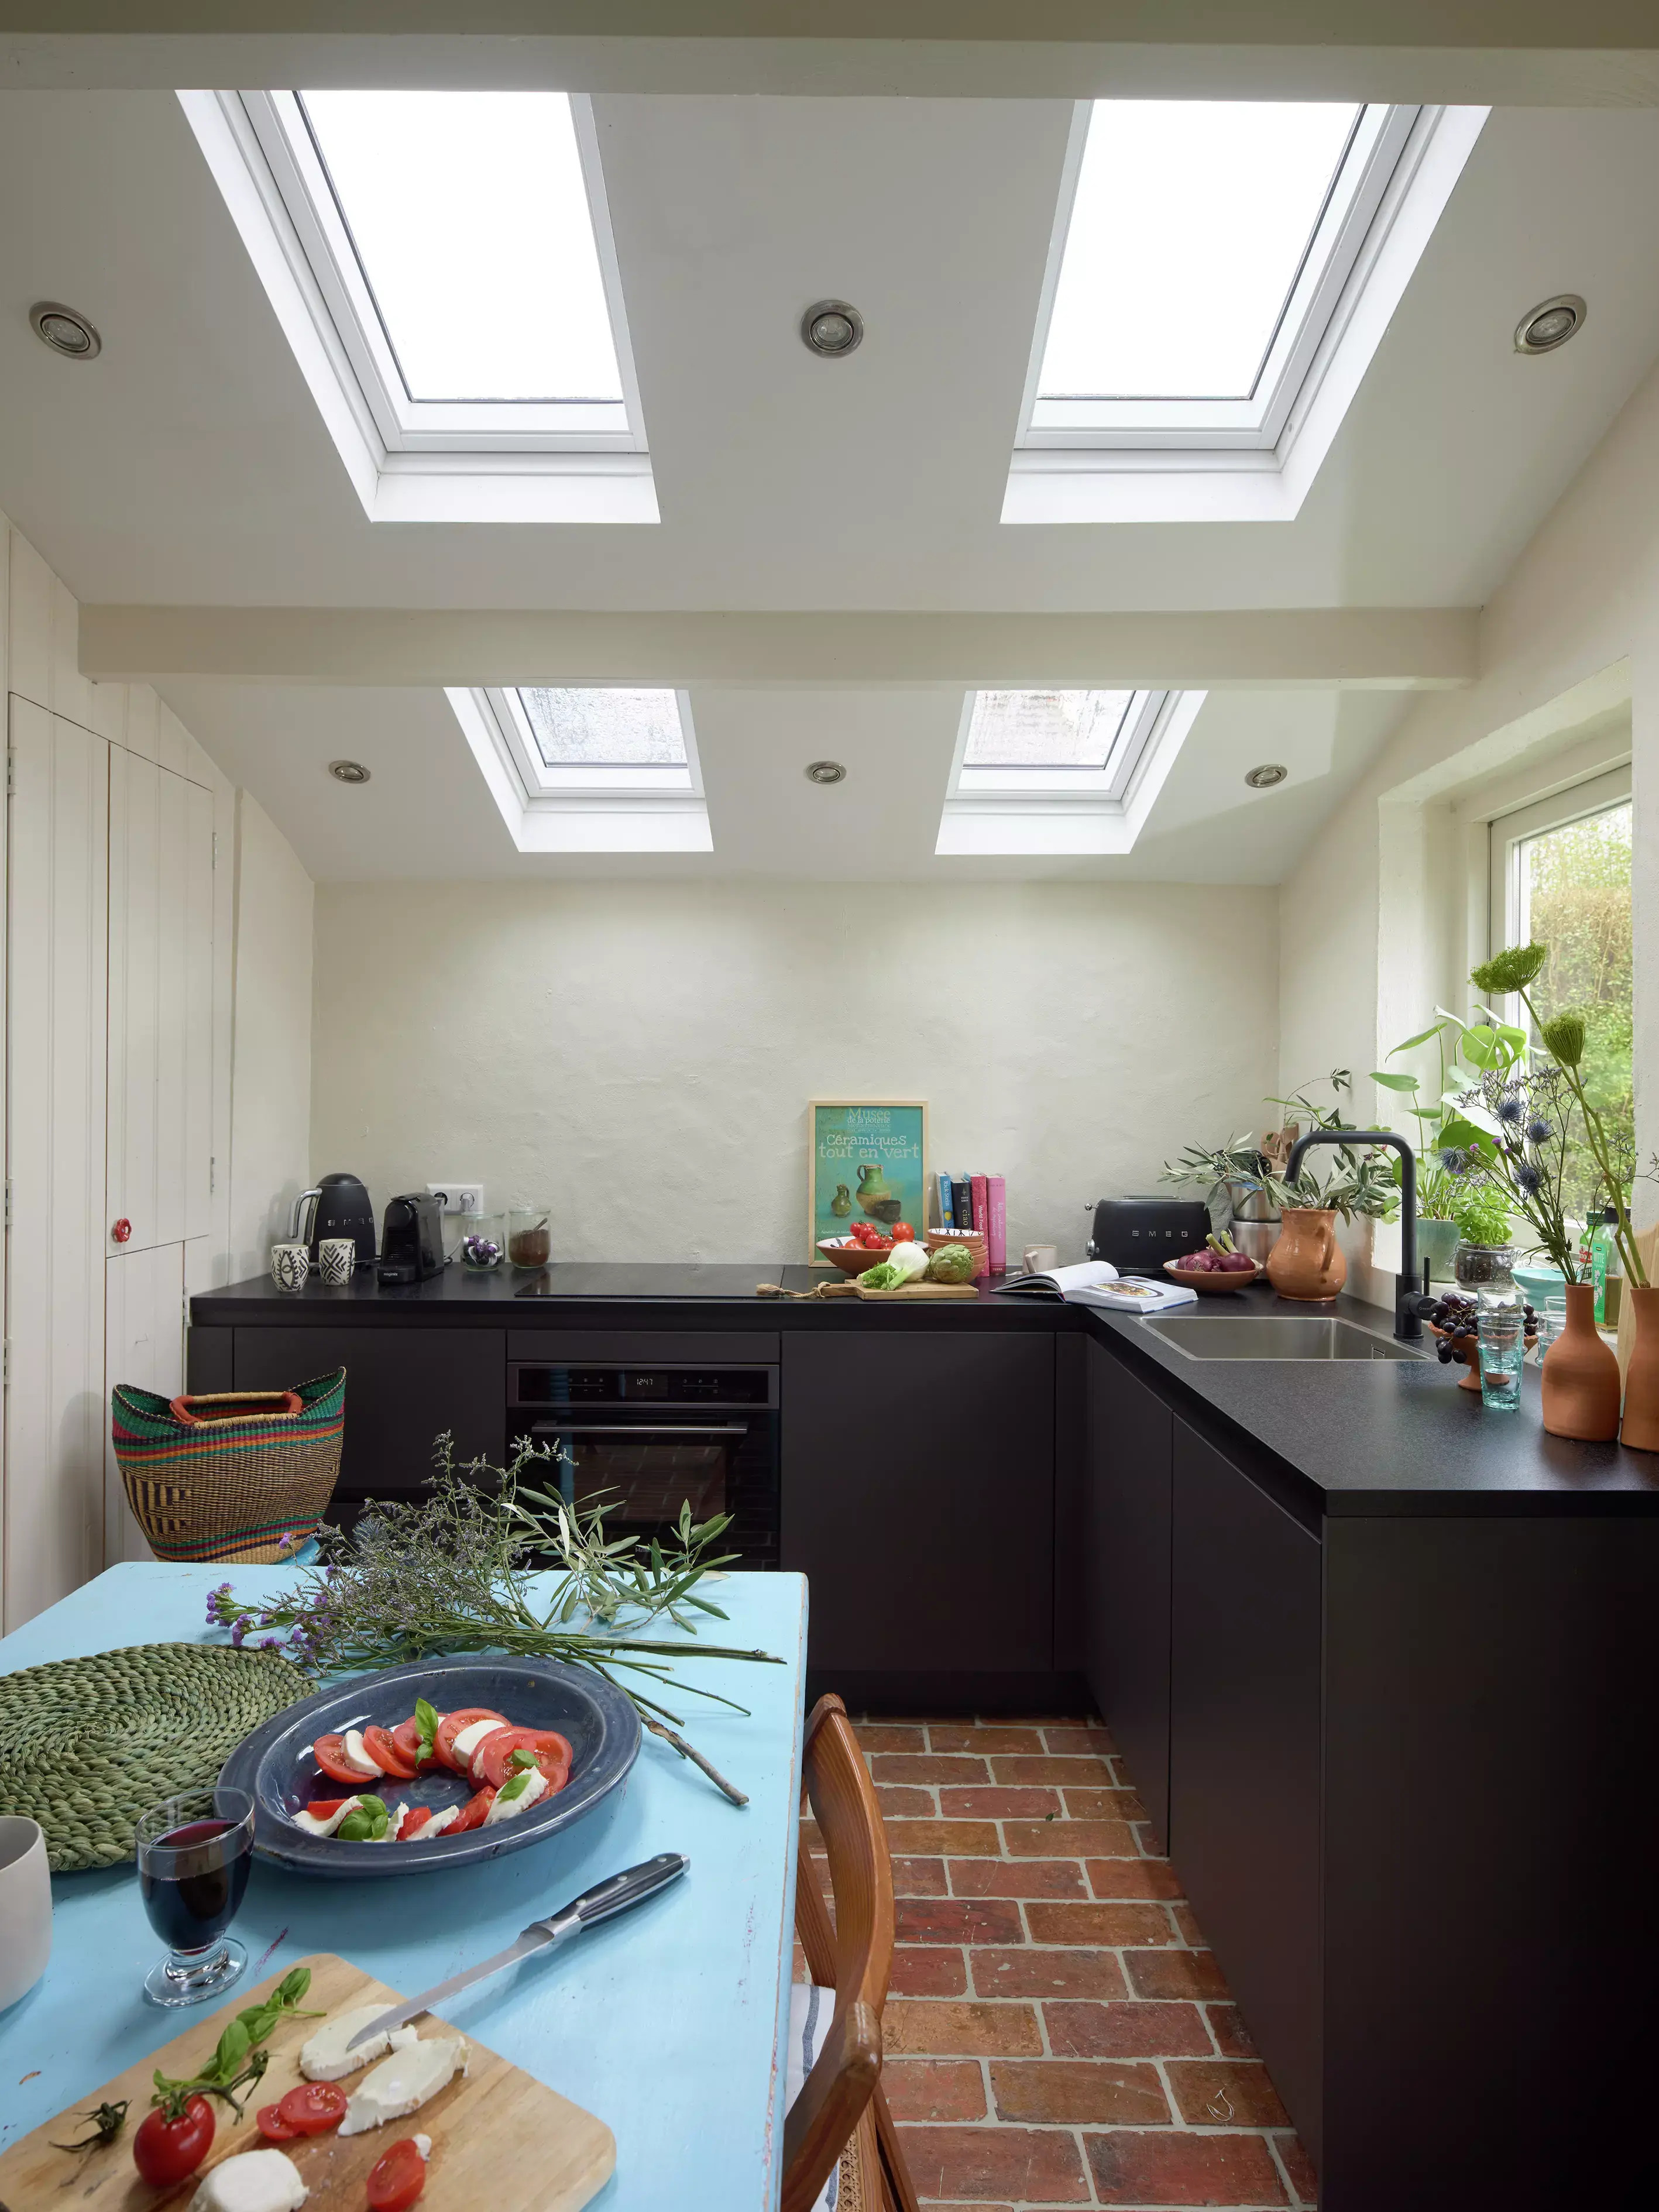 Cuisine moderne avec des fenêtres de toit VELUX, des comptoirs noirs, un sol en brique et une installation de repas frais.